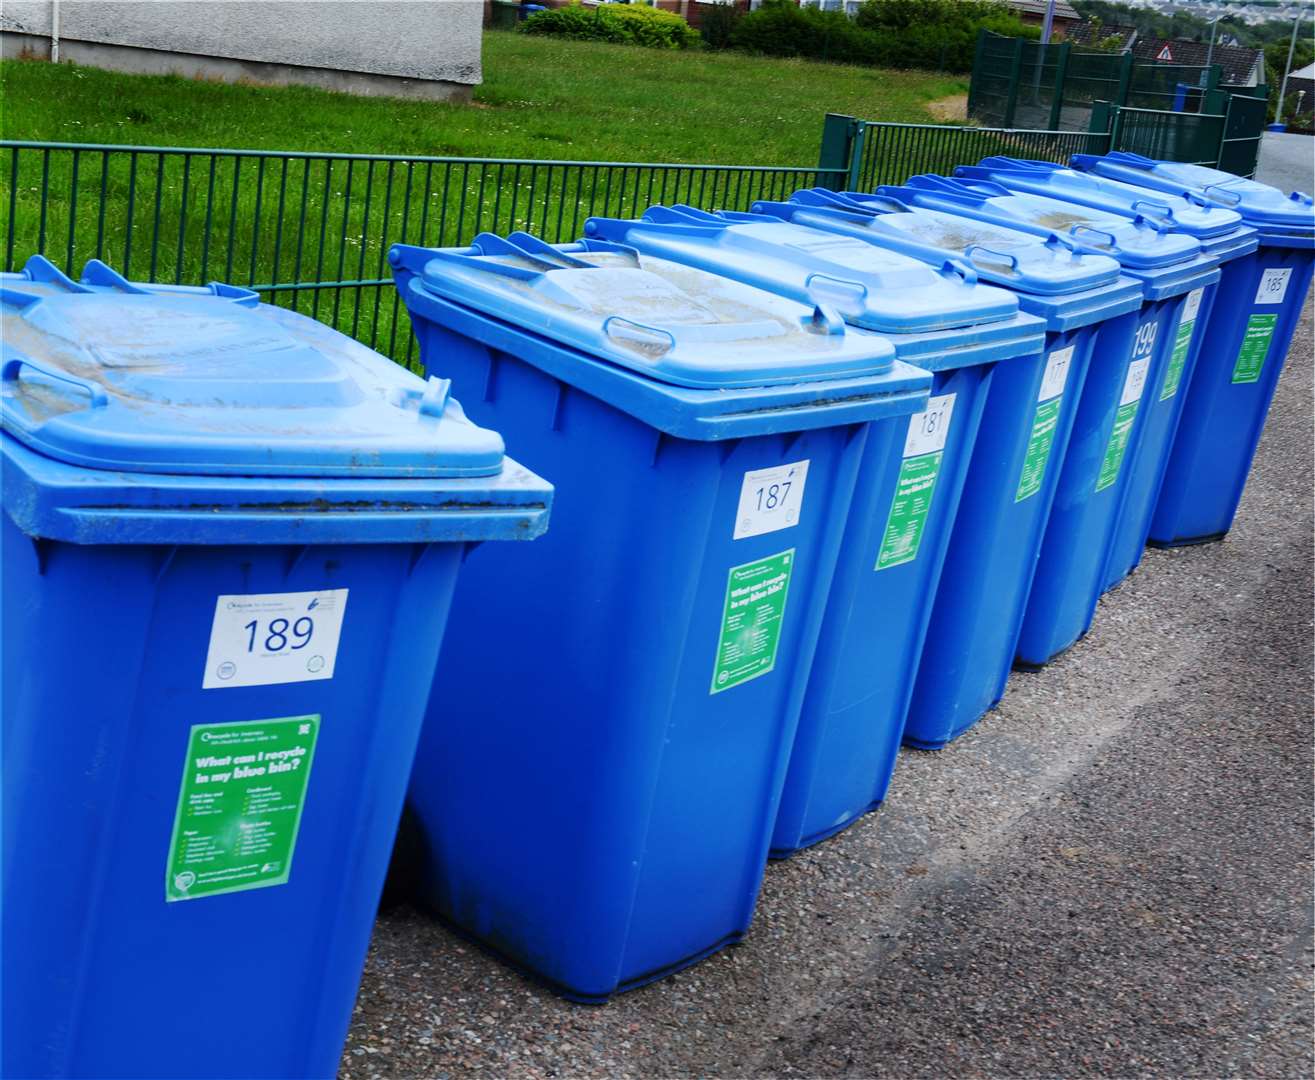 Blue recycling bins.